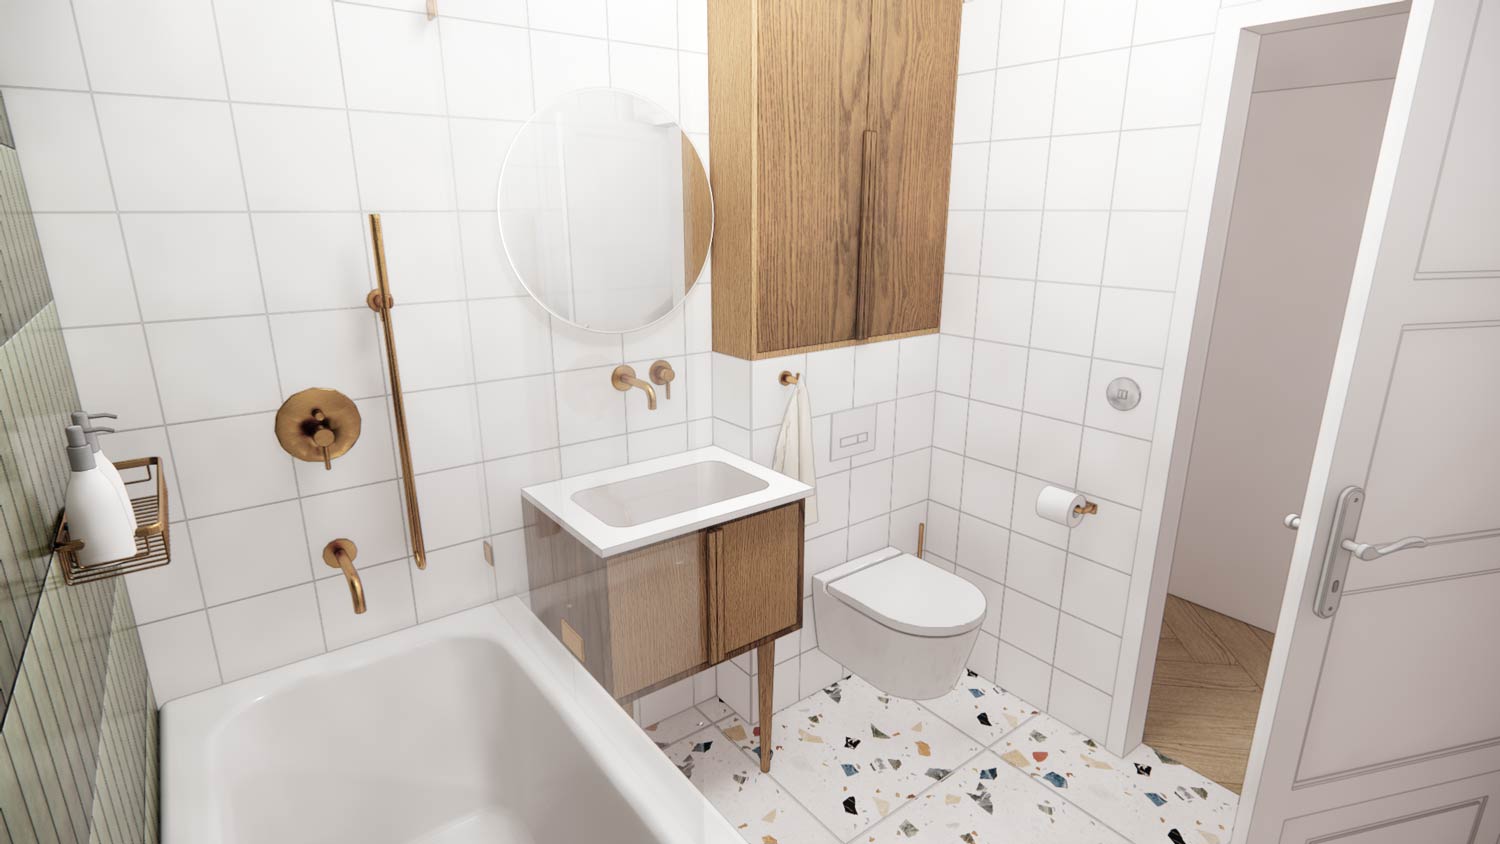 Wizualizacja łazienki w duchu retro, z lastryko na podłodze, zielonymi kaflami na ścianie i złotymi dodatkami